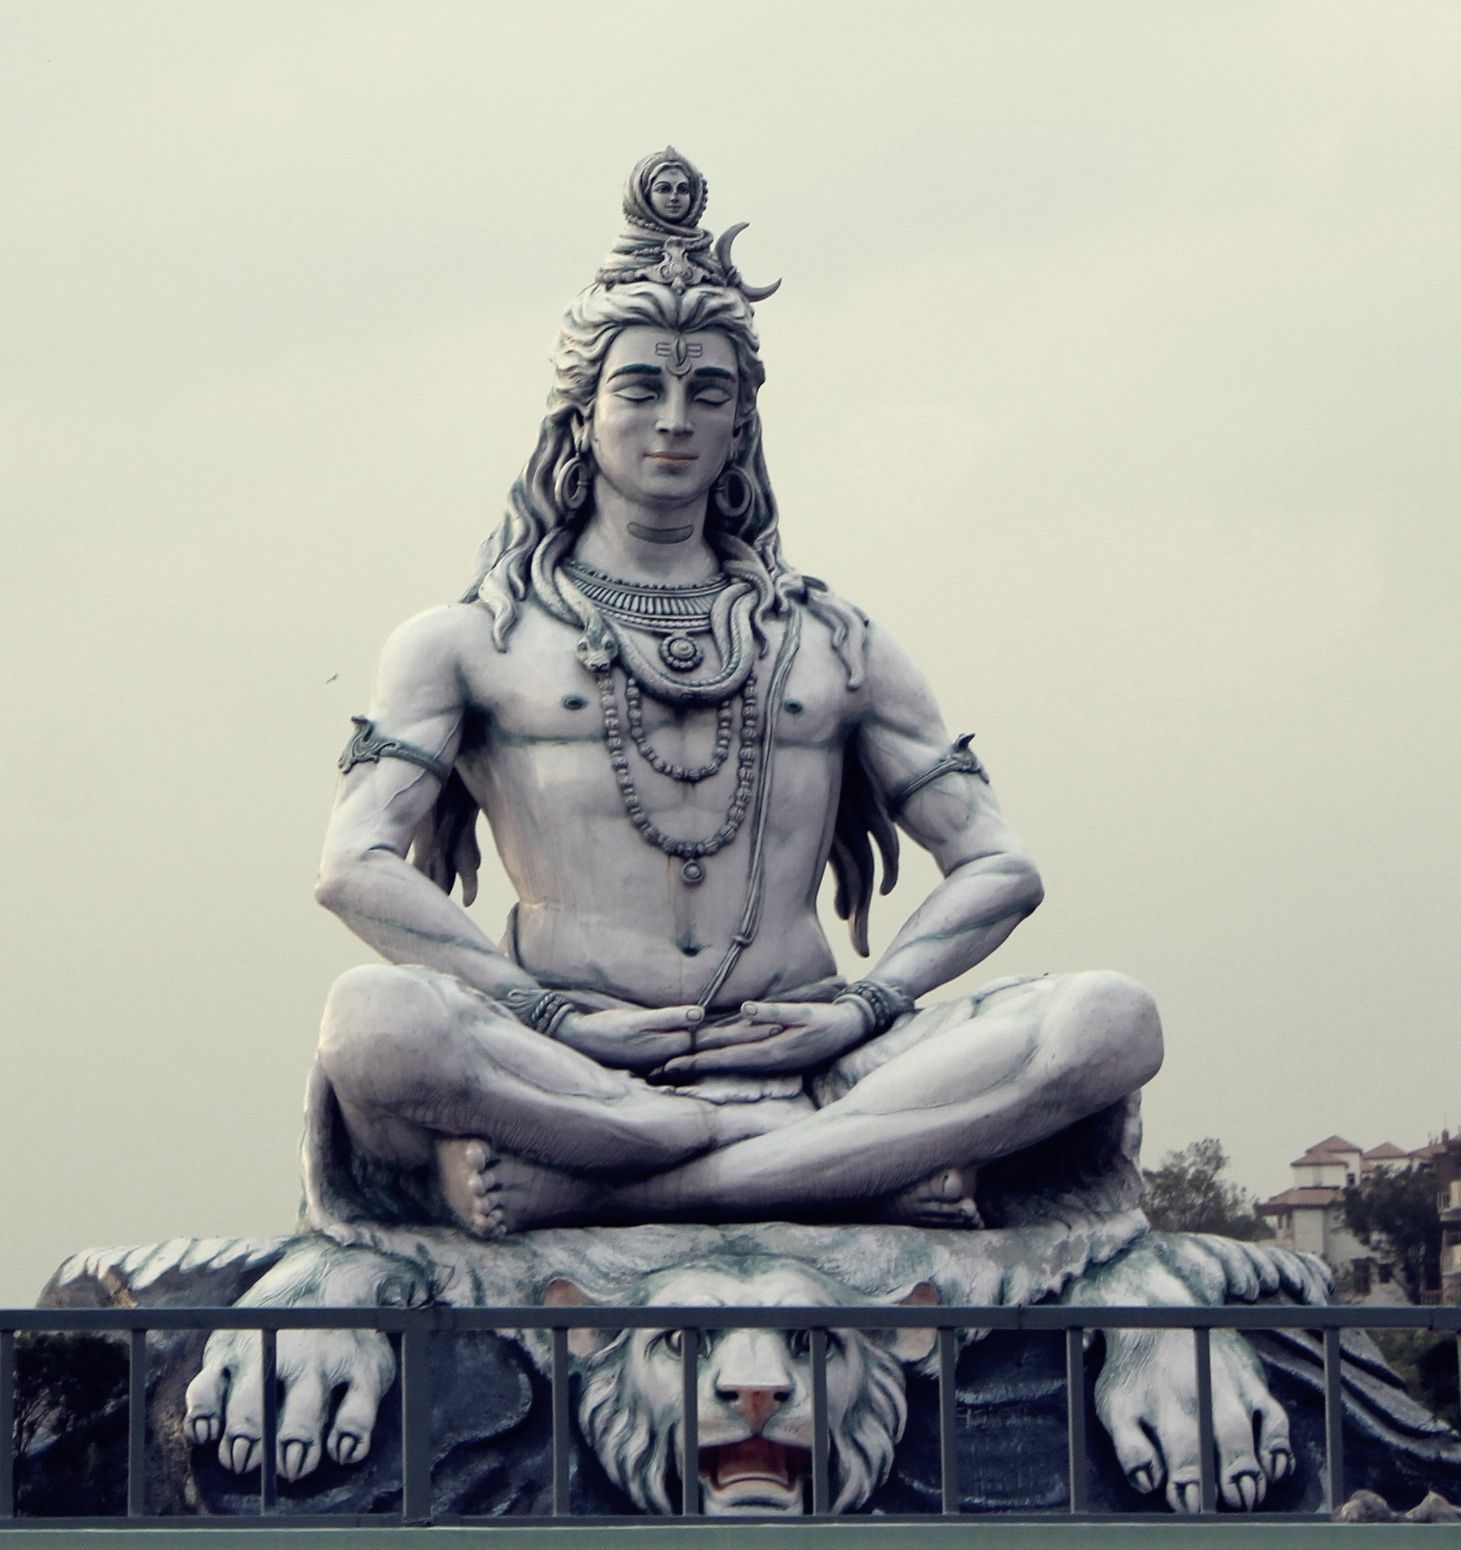 Lord Shiva's statue in Rishikesh. Parmarth Ashram. Lord shiva statue, Lord shiva, Shiva statue